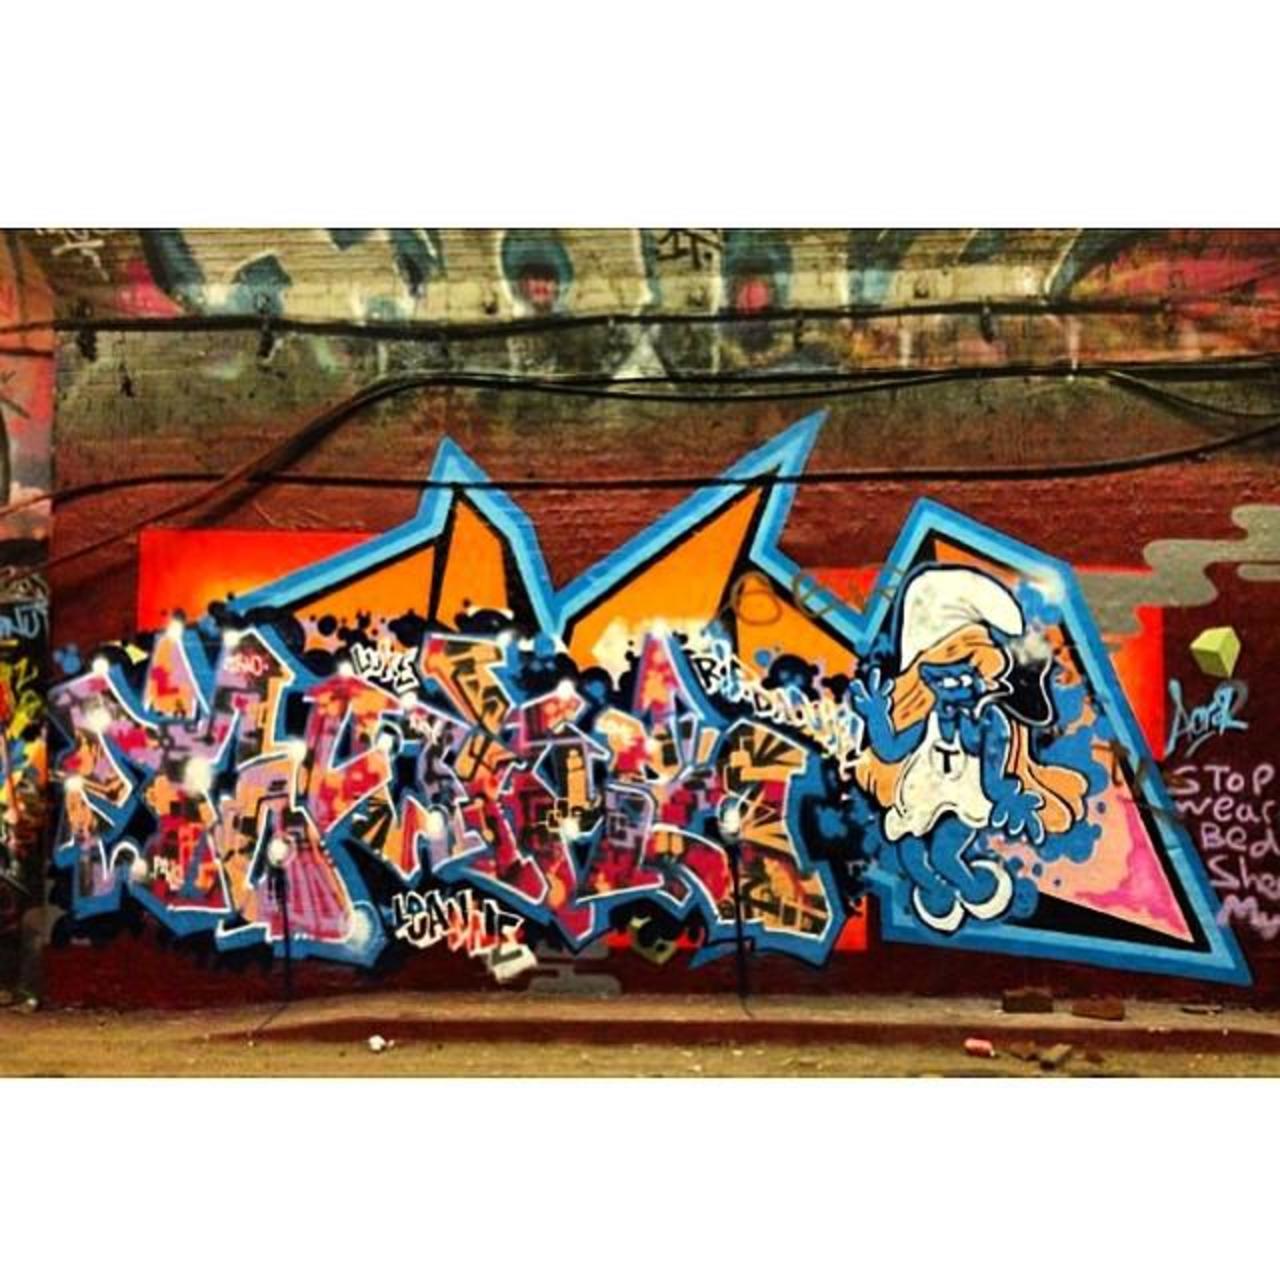 #banksytunnel #graffiti #graffititunnel #leakestreet #waterloo #streetart #streetartlondon #mural #smurfs #smurfett… http://t.co/T6ZMExEKxo